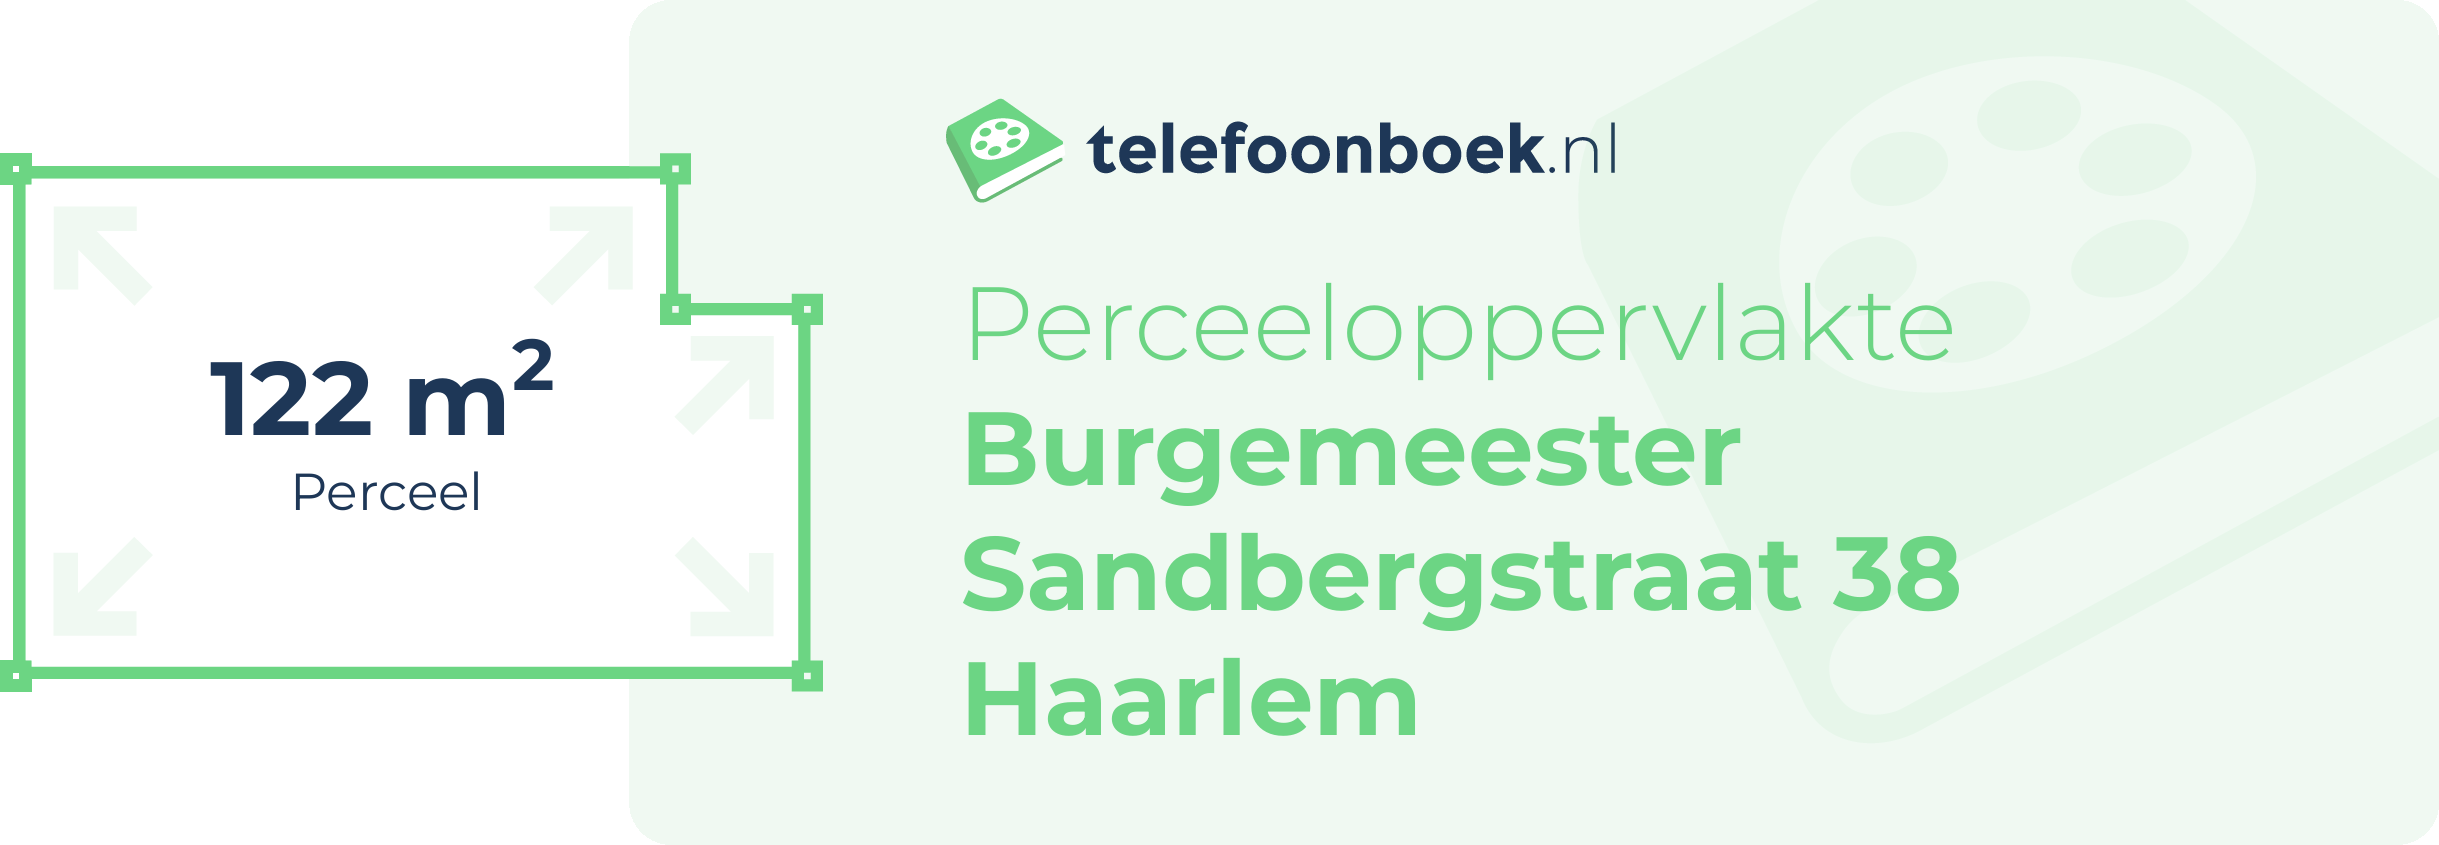 Perceeloppervlakte Burgemeester Sandbergstraat 38 Haarlem